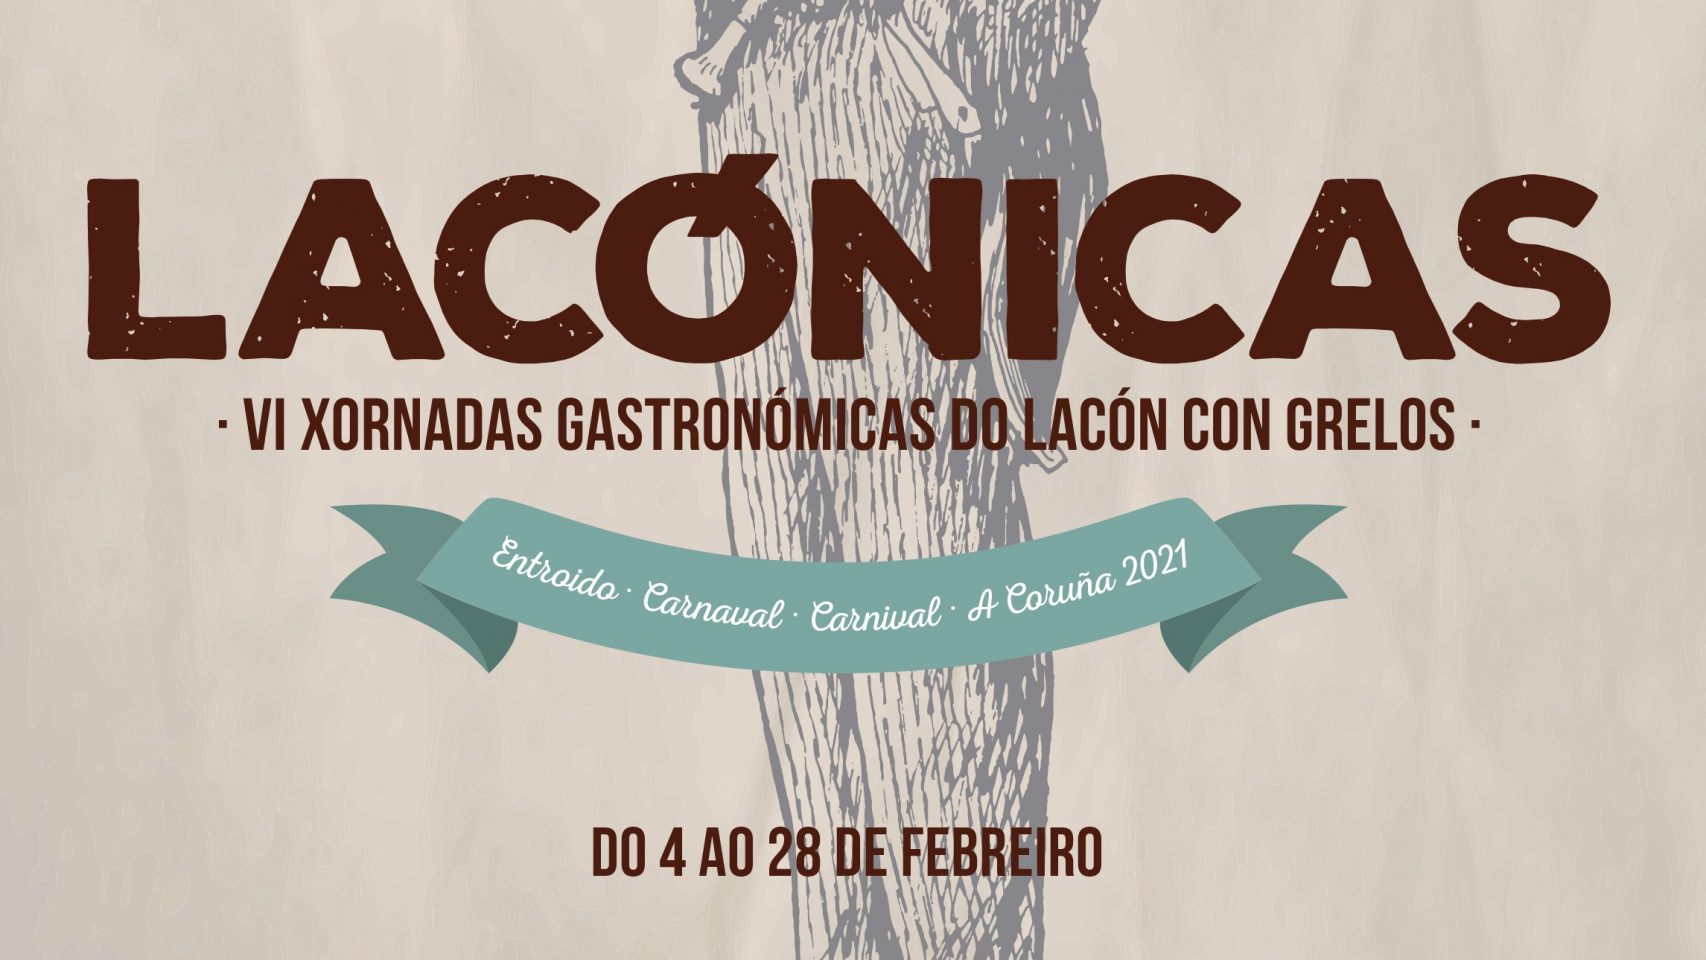 Cartel de las jornadas gastronómicas Lacónicas de A Coruña.